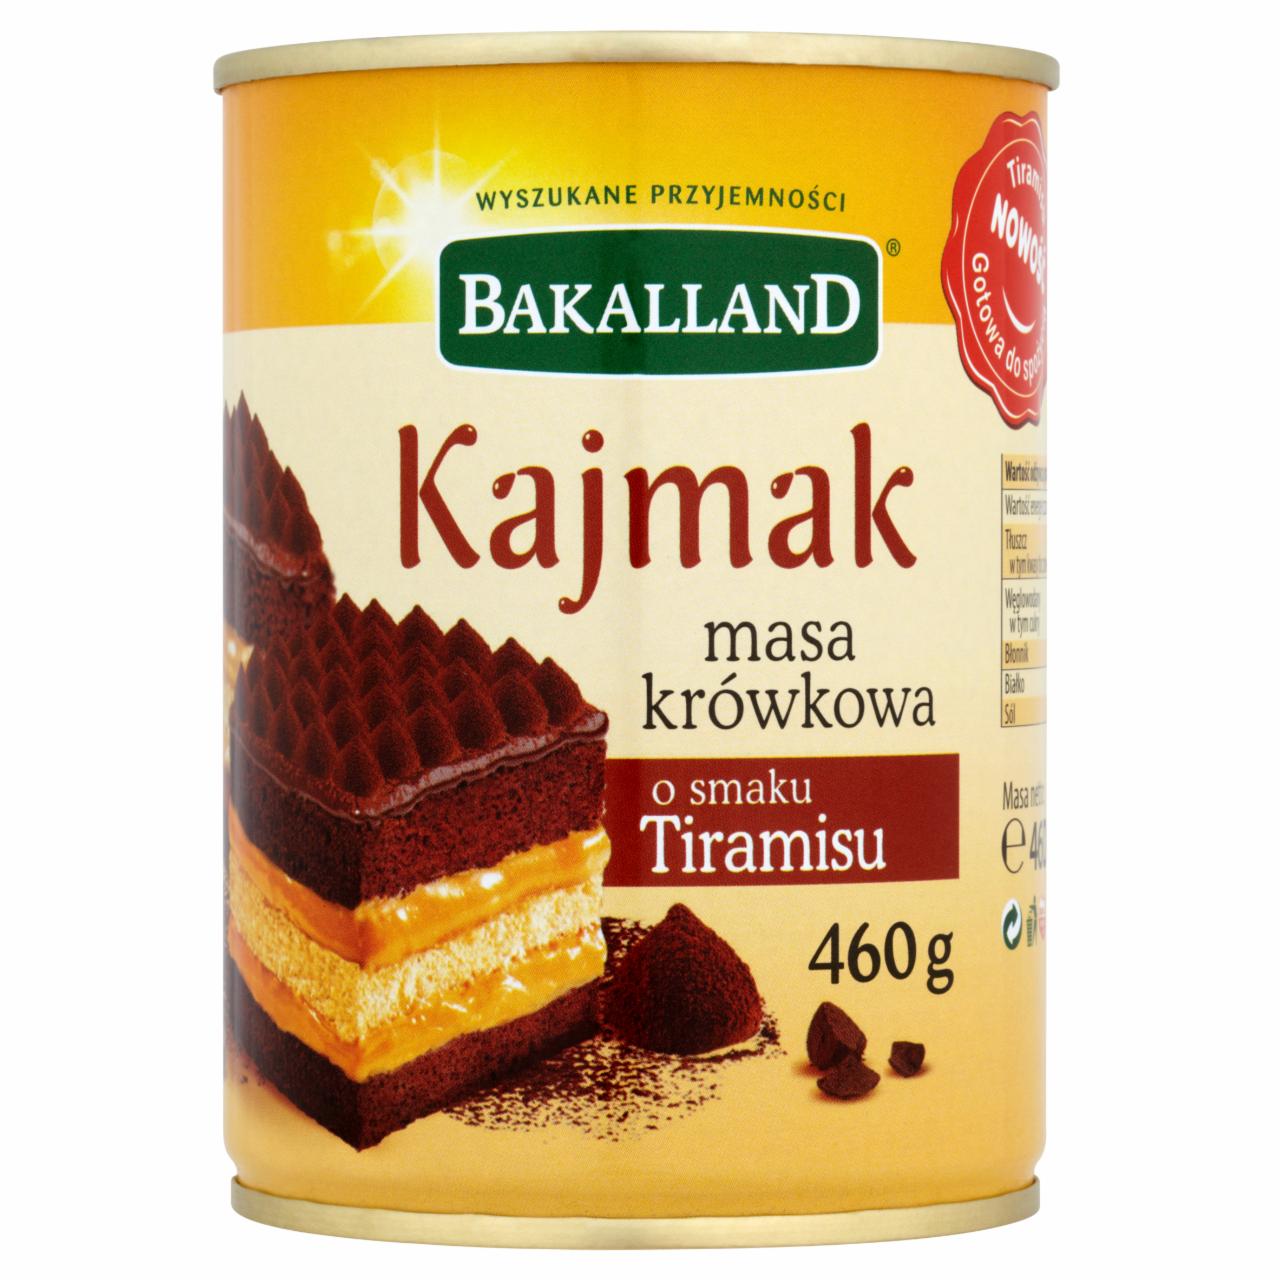 Zdjęcia - Bakalland Kajmak masa krówkowa o smaku tiramisu 460 g